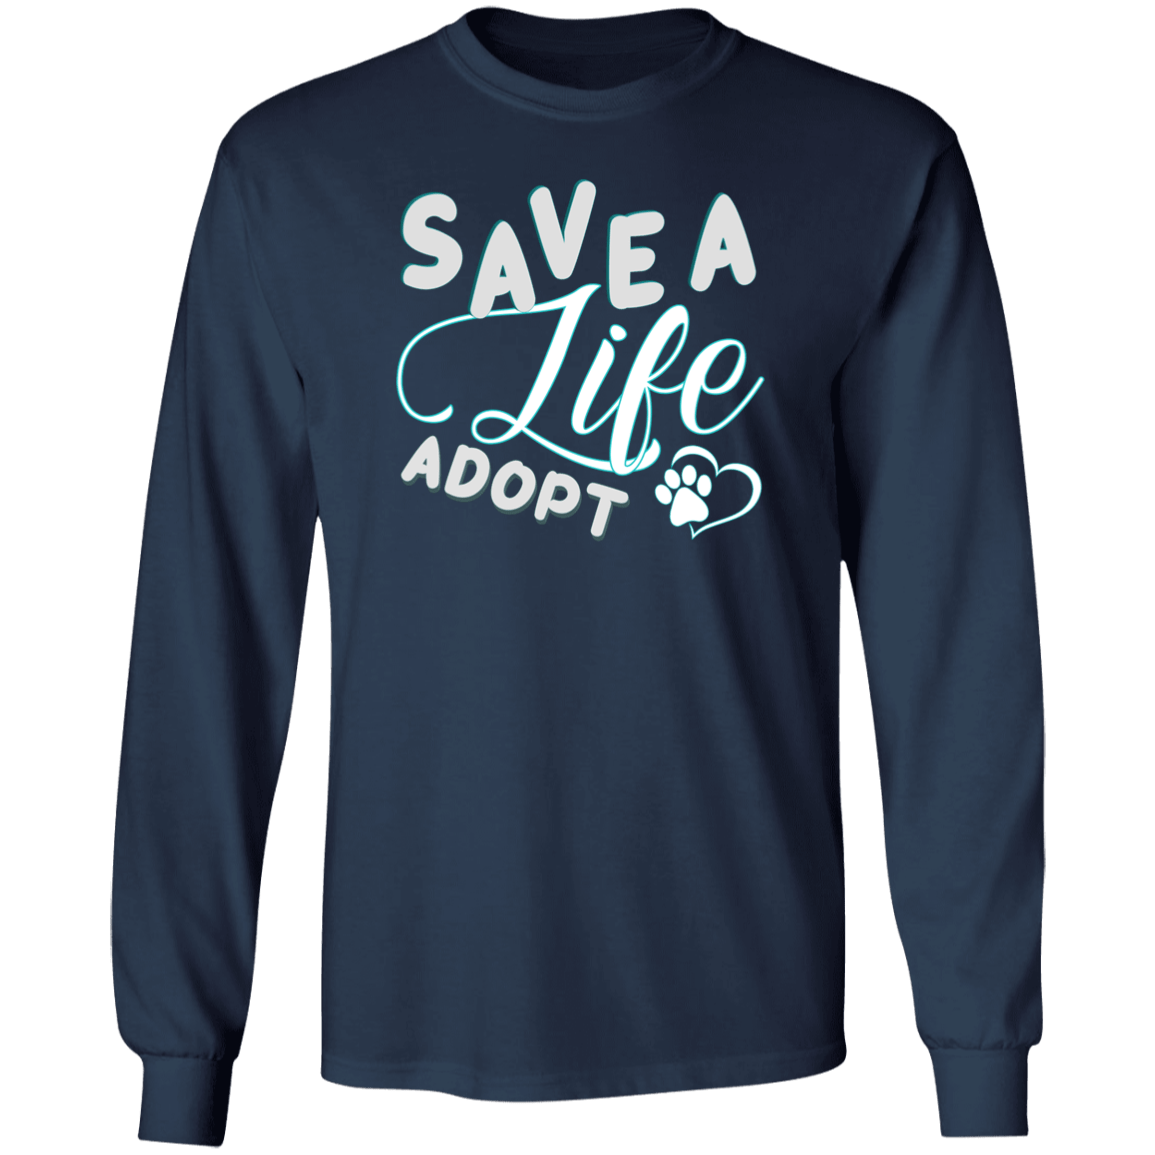 Save A Life Adopt - Long Sleeve T Shirt.